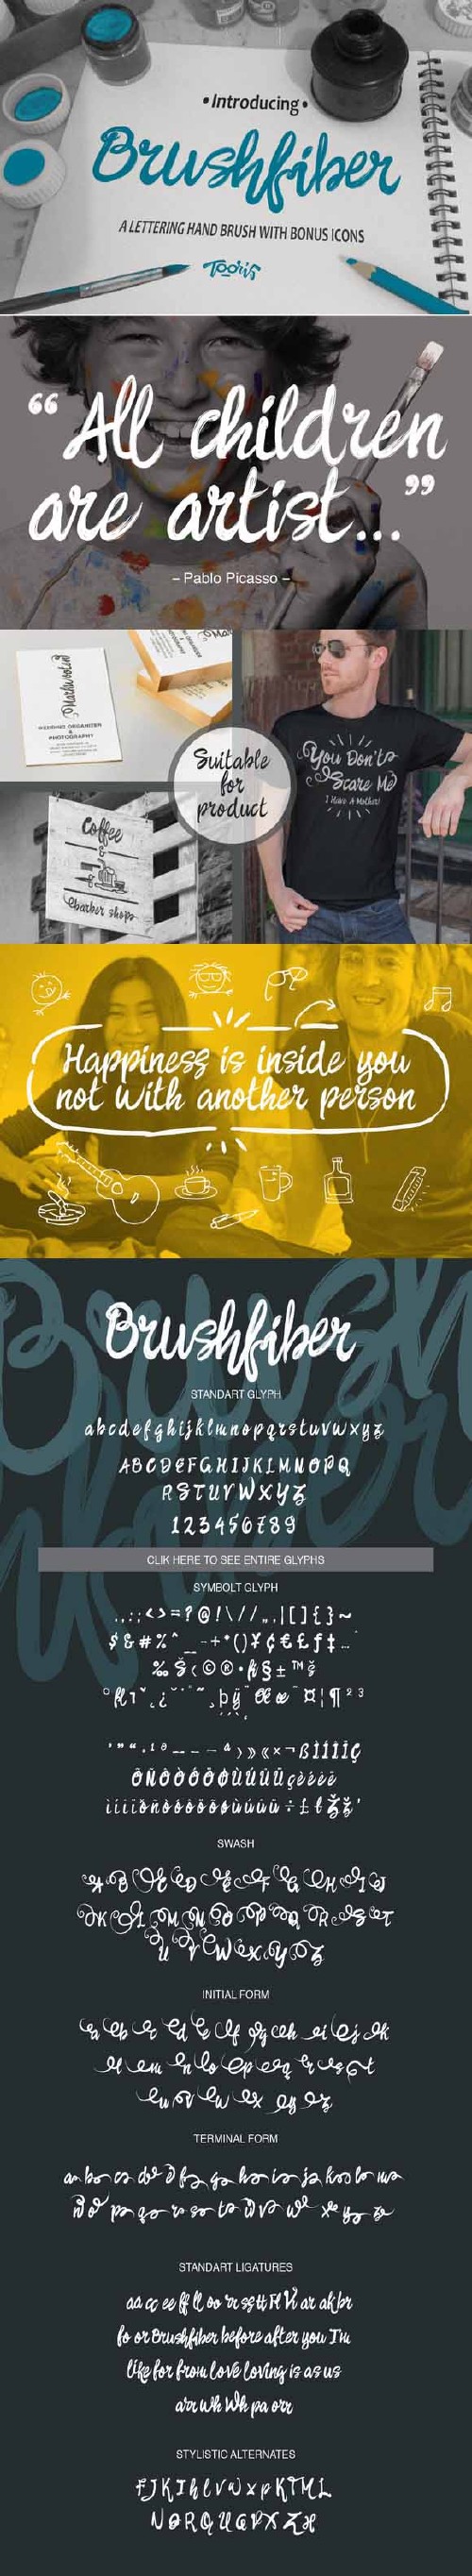 Brushfiber Typeface with Bonus